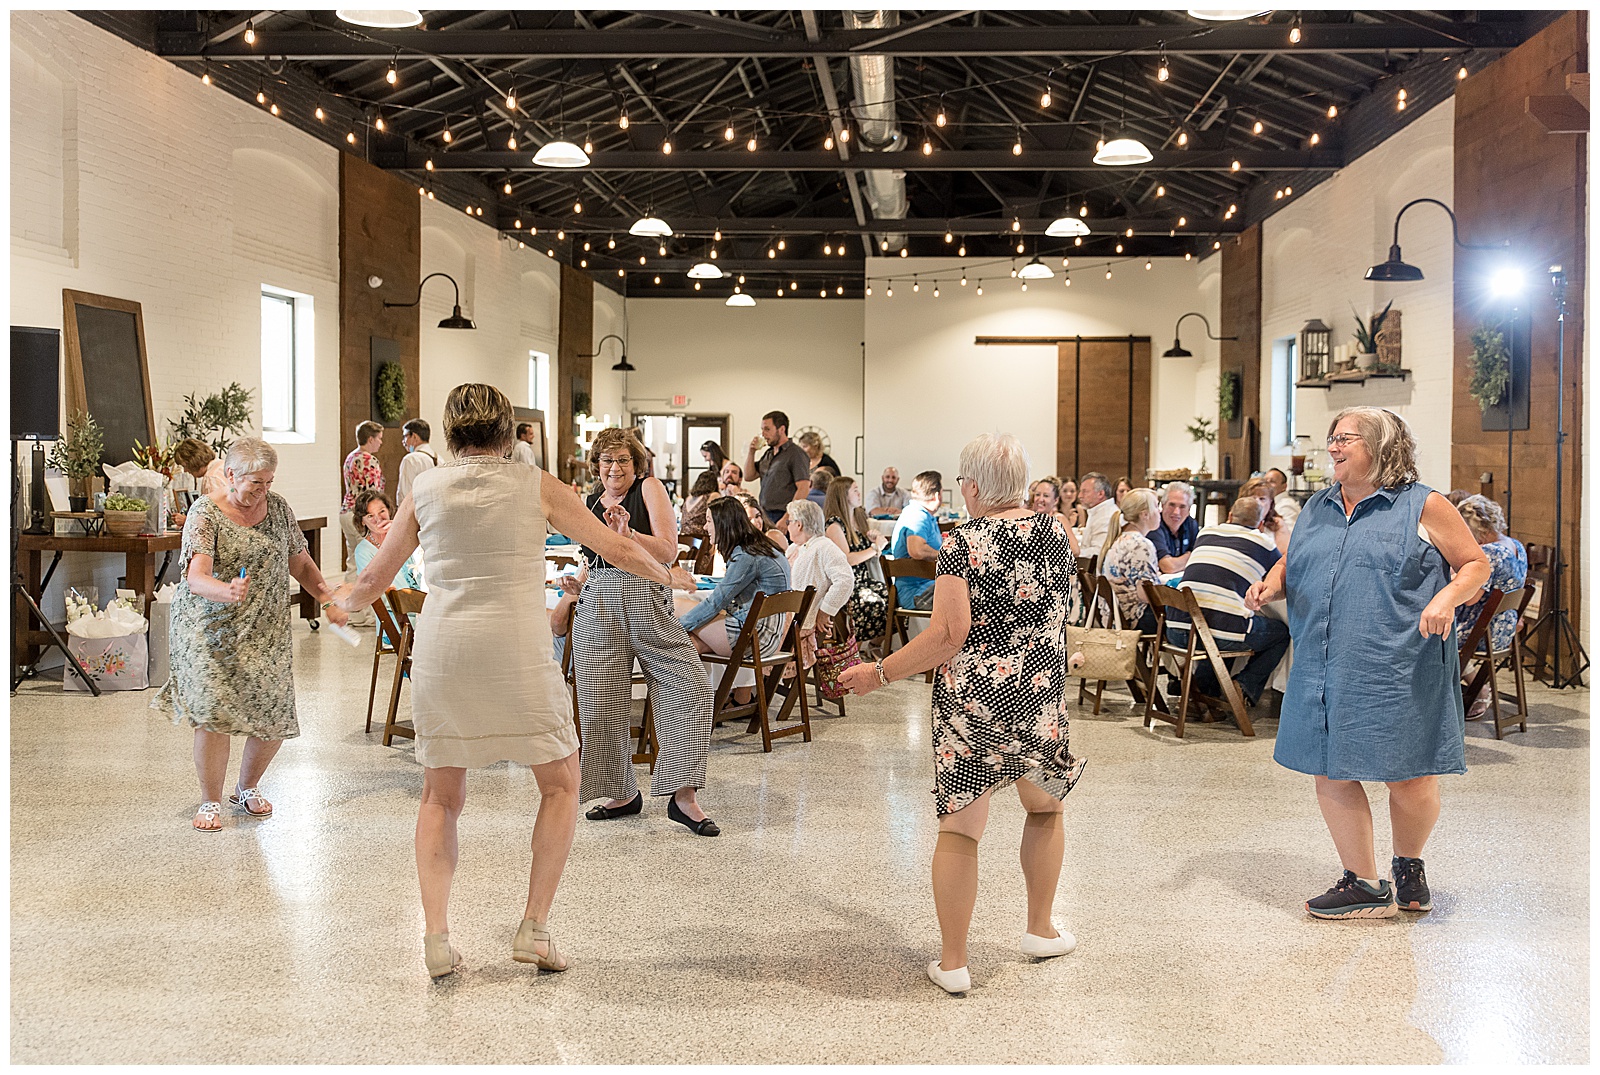 guests dancing at wedding reception at Silk Mill on Main